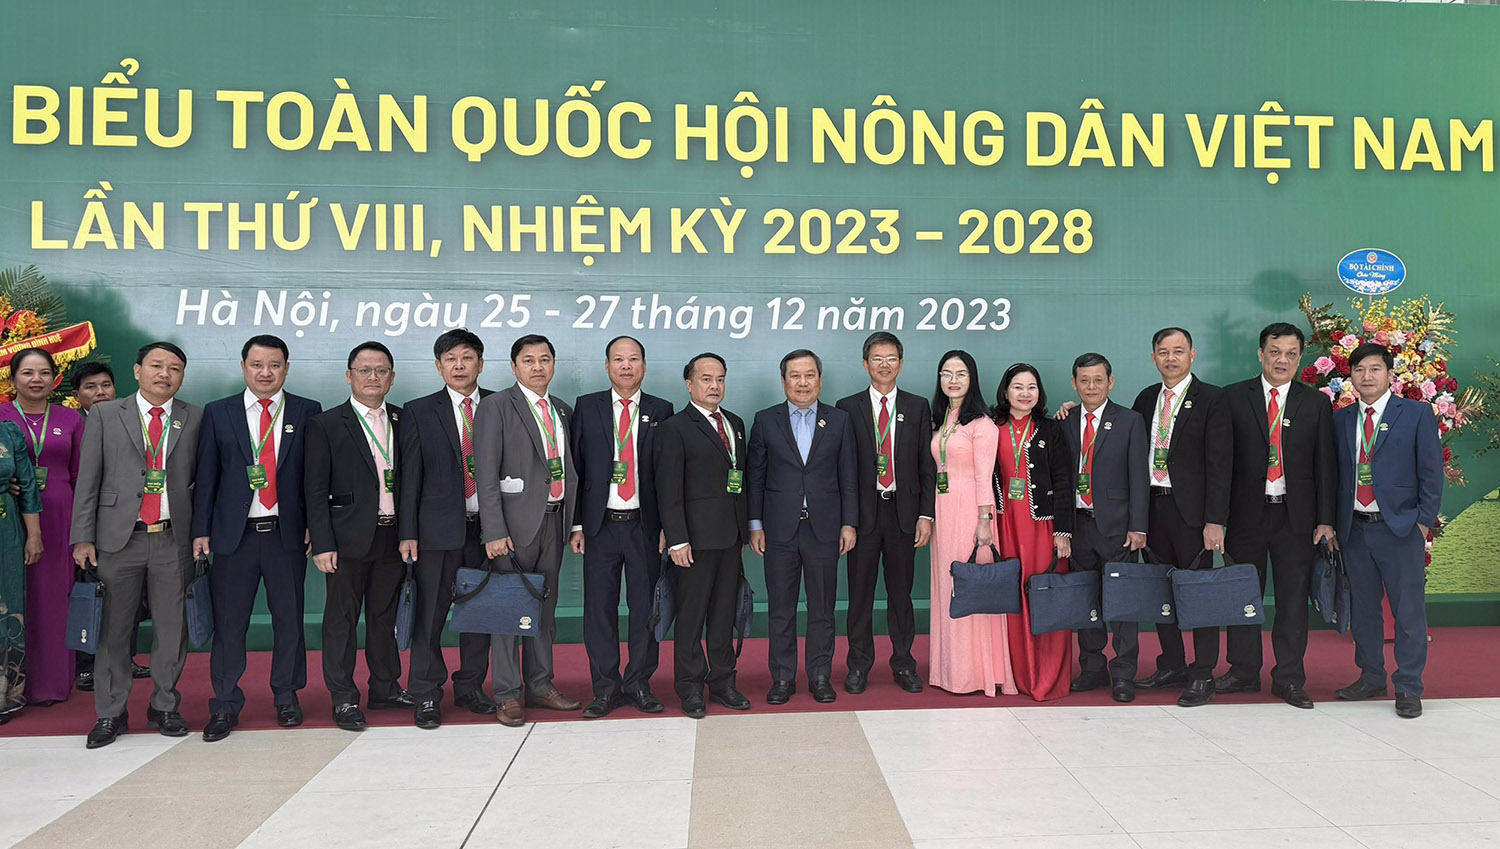 Đồng chí Trần Tiến Sỹ trúng cử Ban Chấp hành Trung ương Hội Nông dân Việt Nam khóa VIII